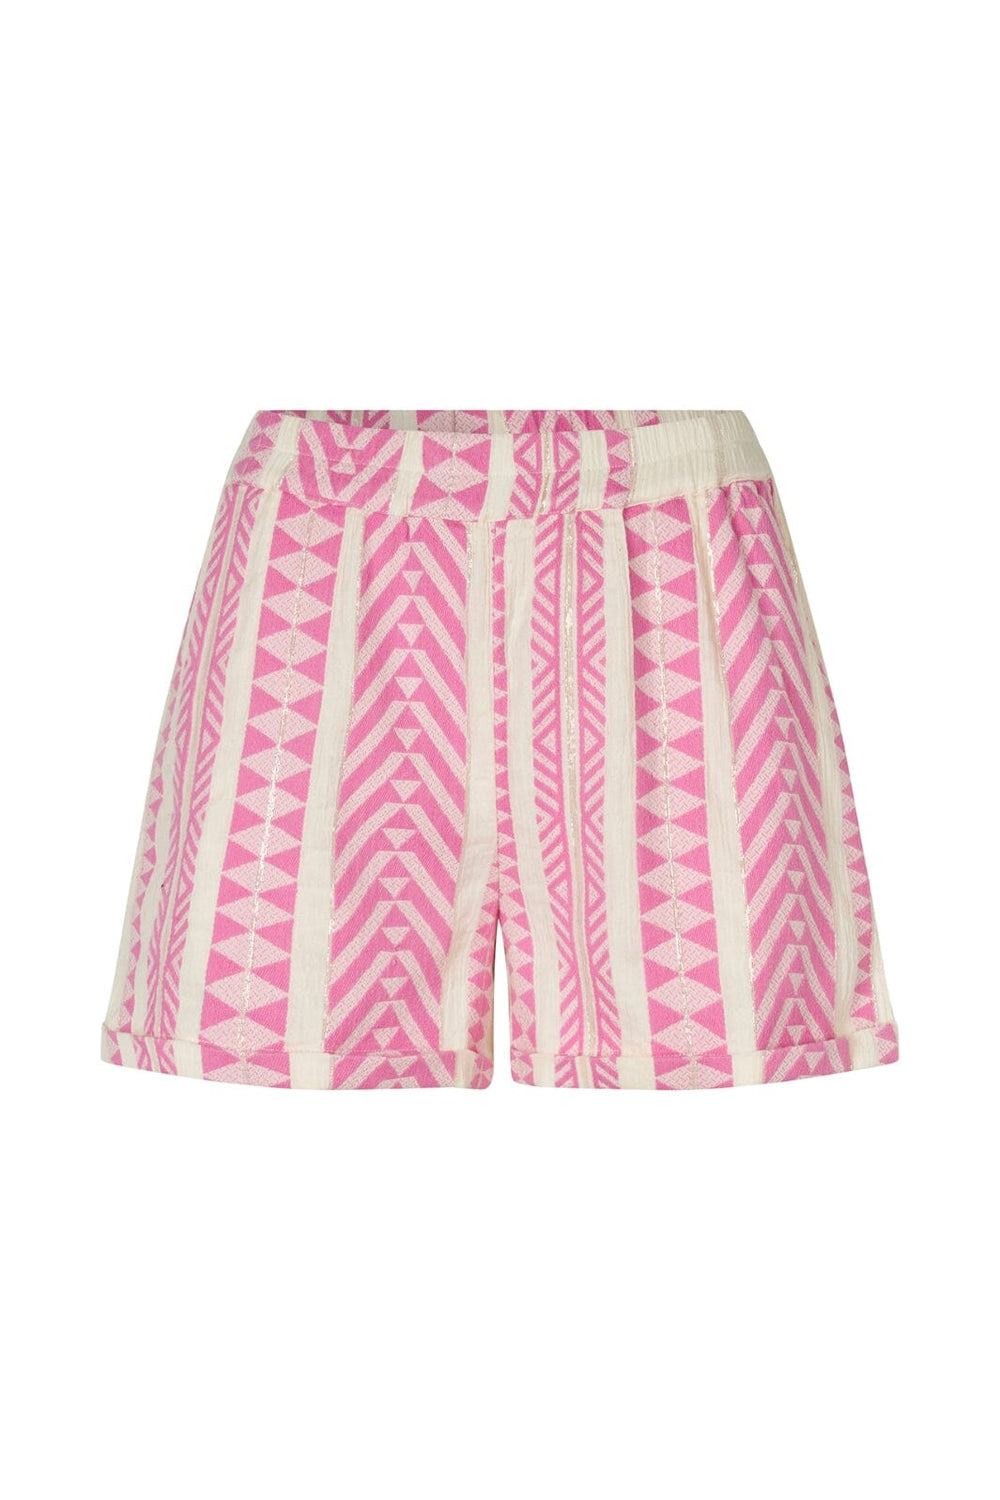 Lollys Laundry - DelhiLL Shorts 24286-2032 - 51 Pink Shorts 